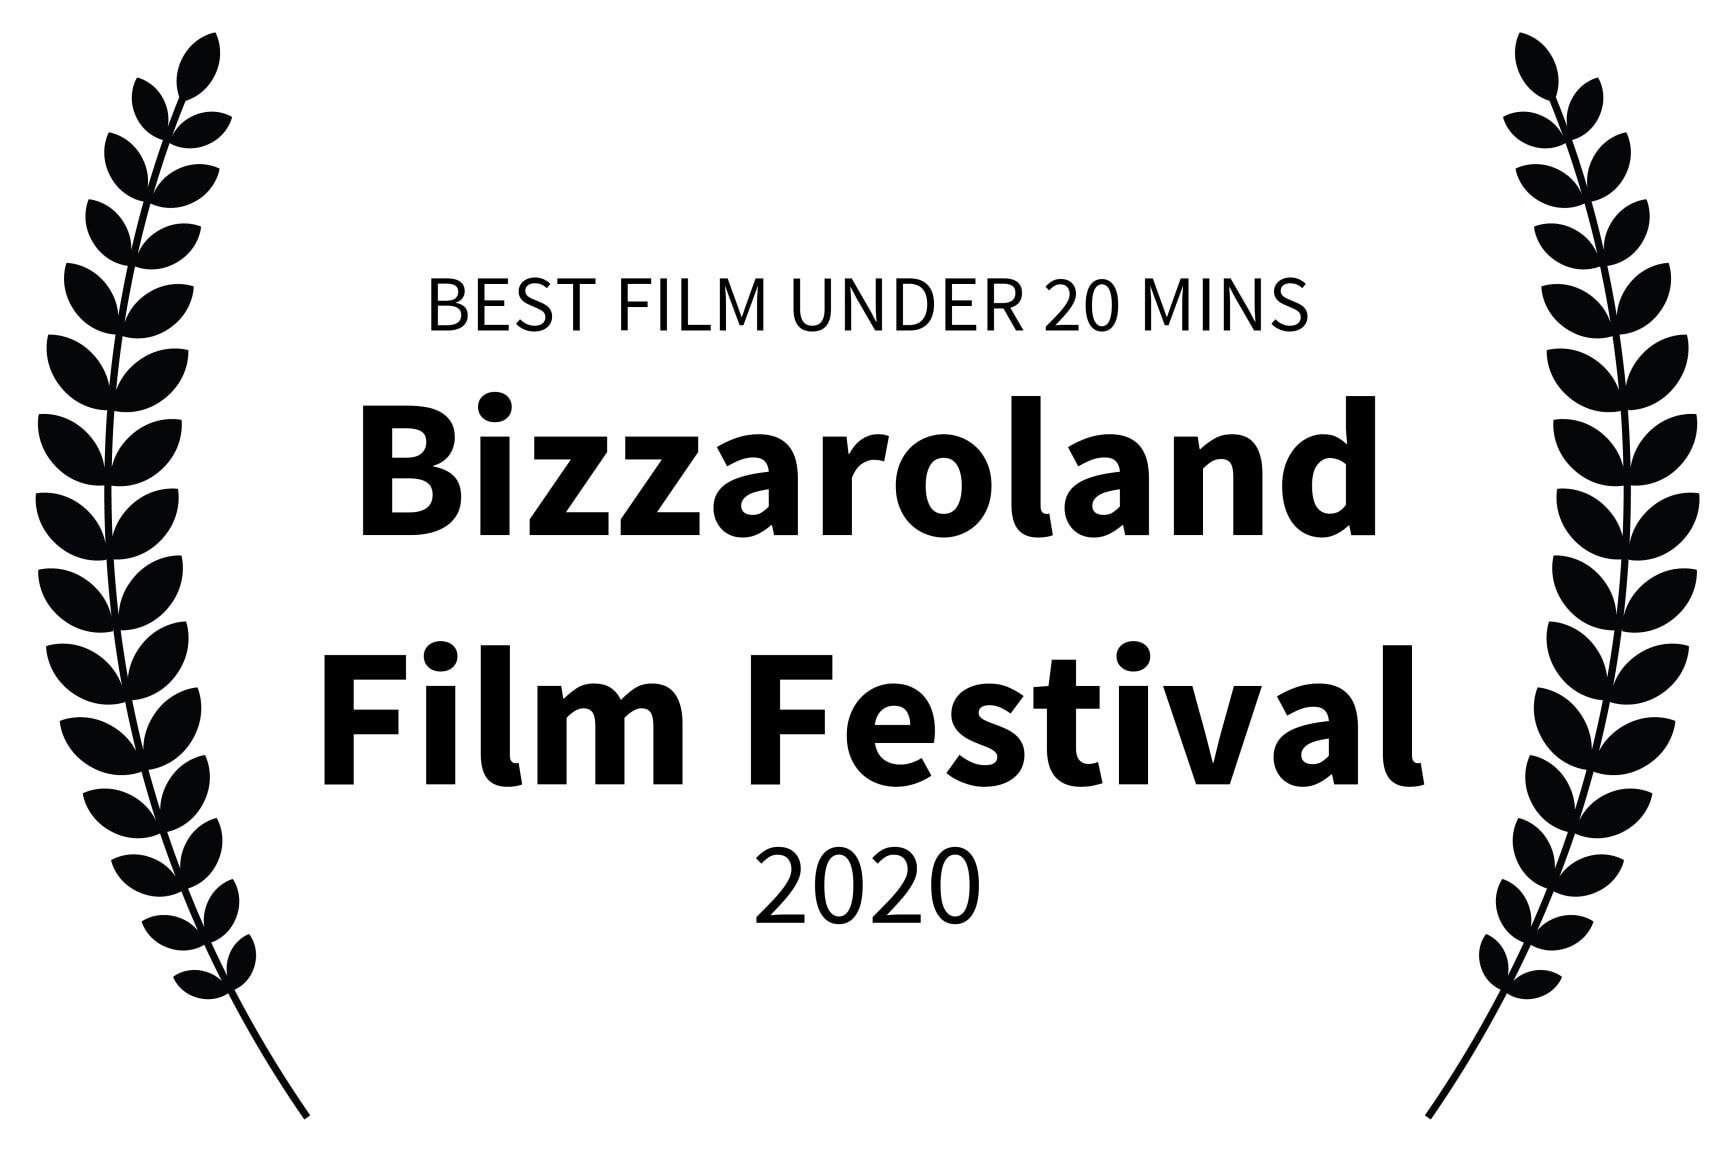 BEST FILM UNDER 20 MINS - Bizzaroland Film Festival - 2020